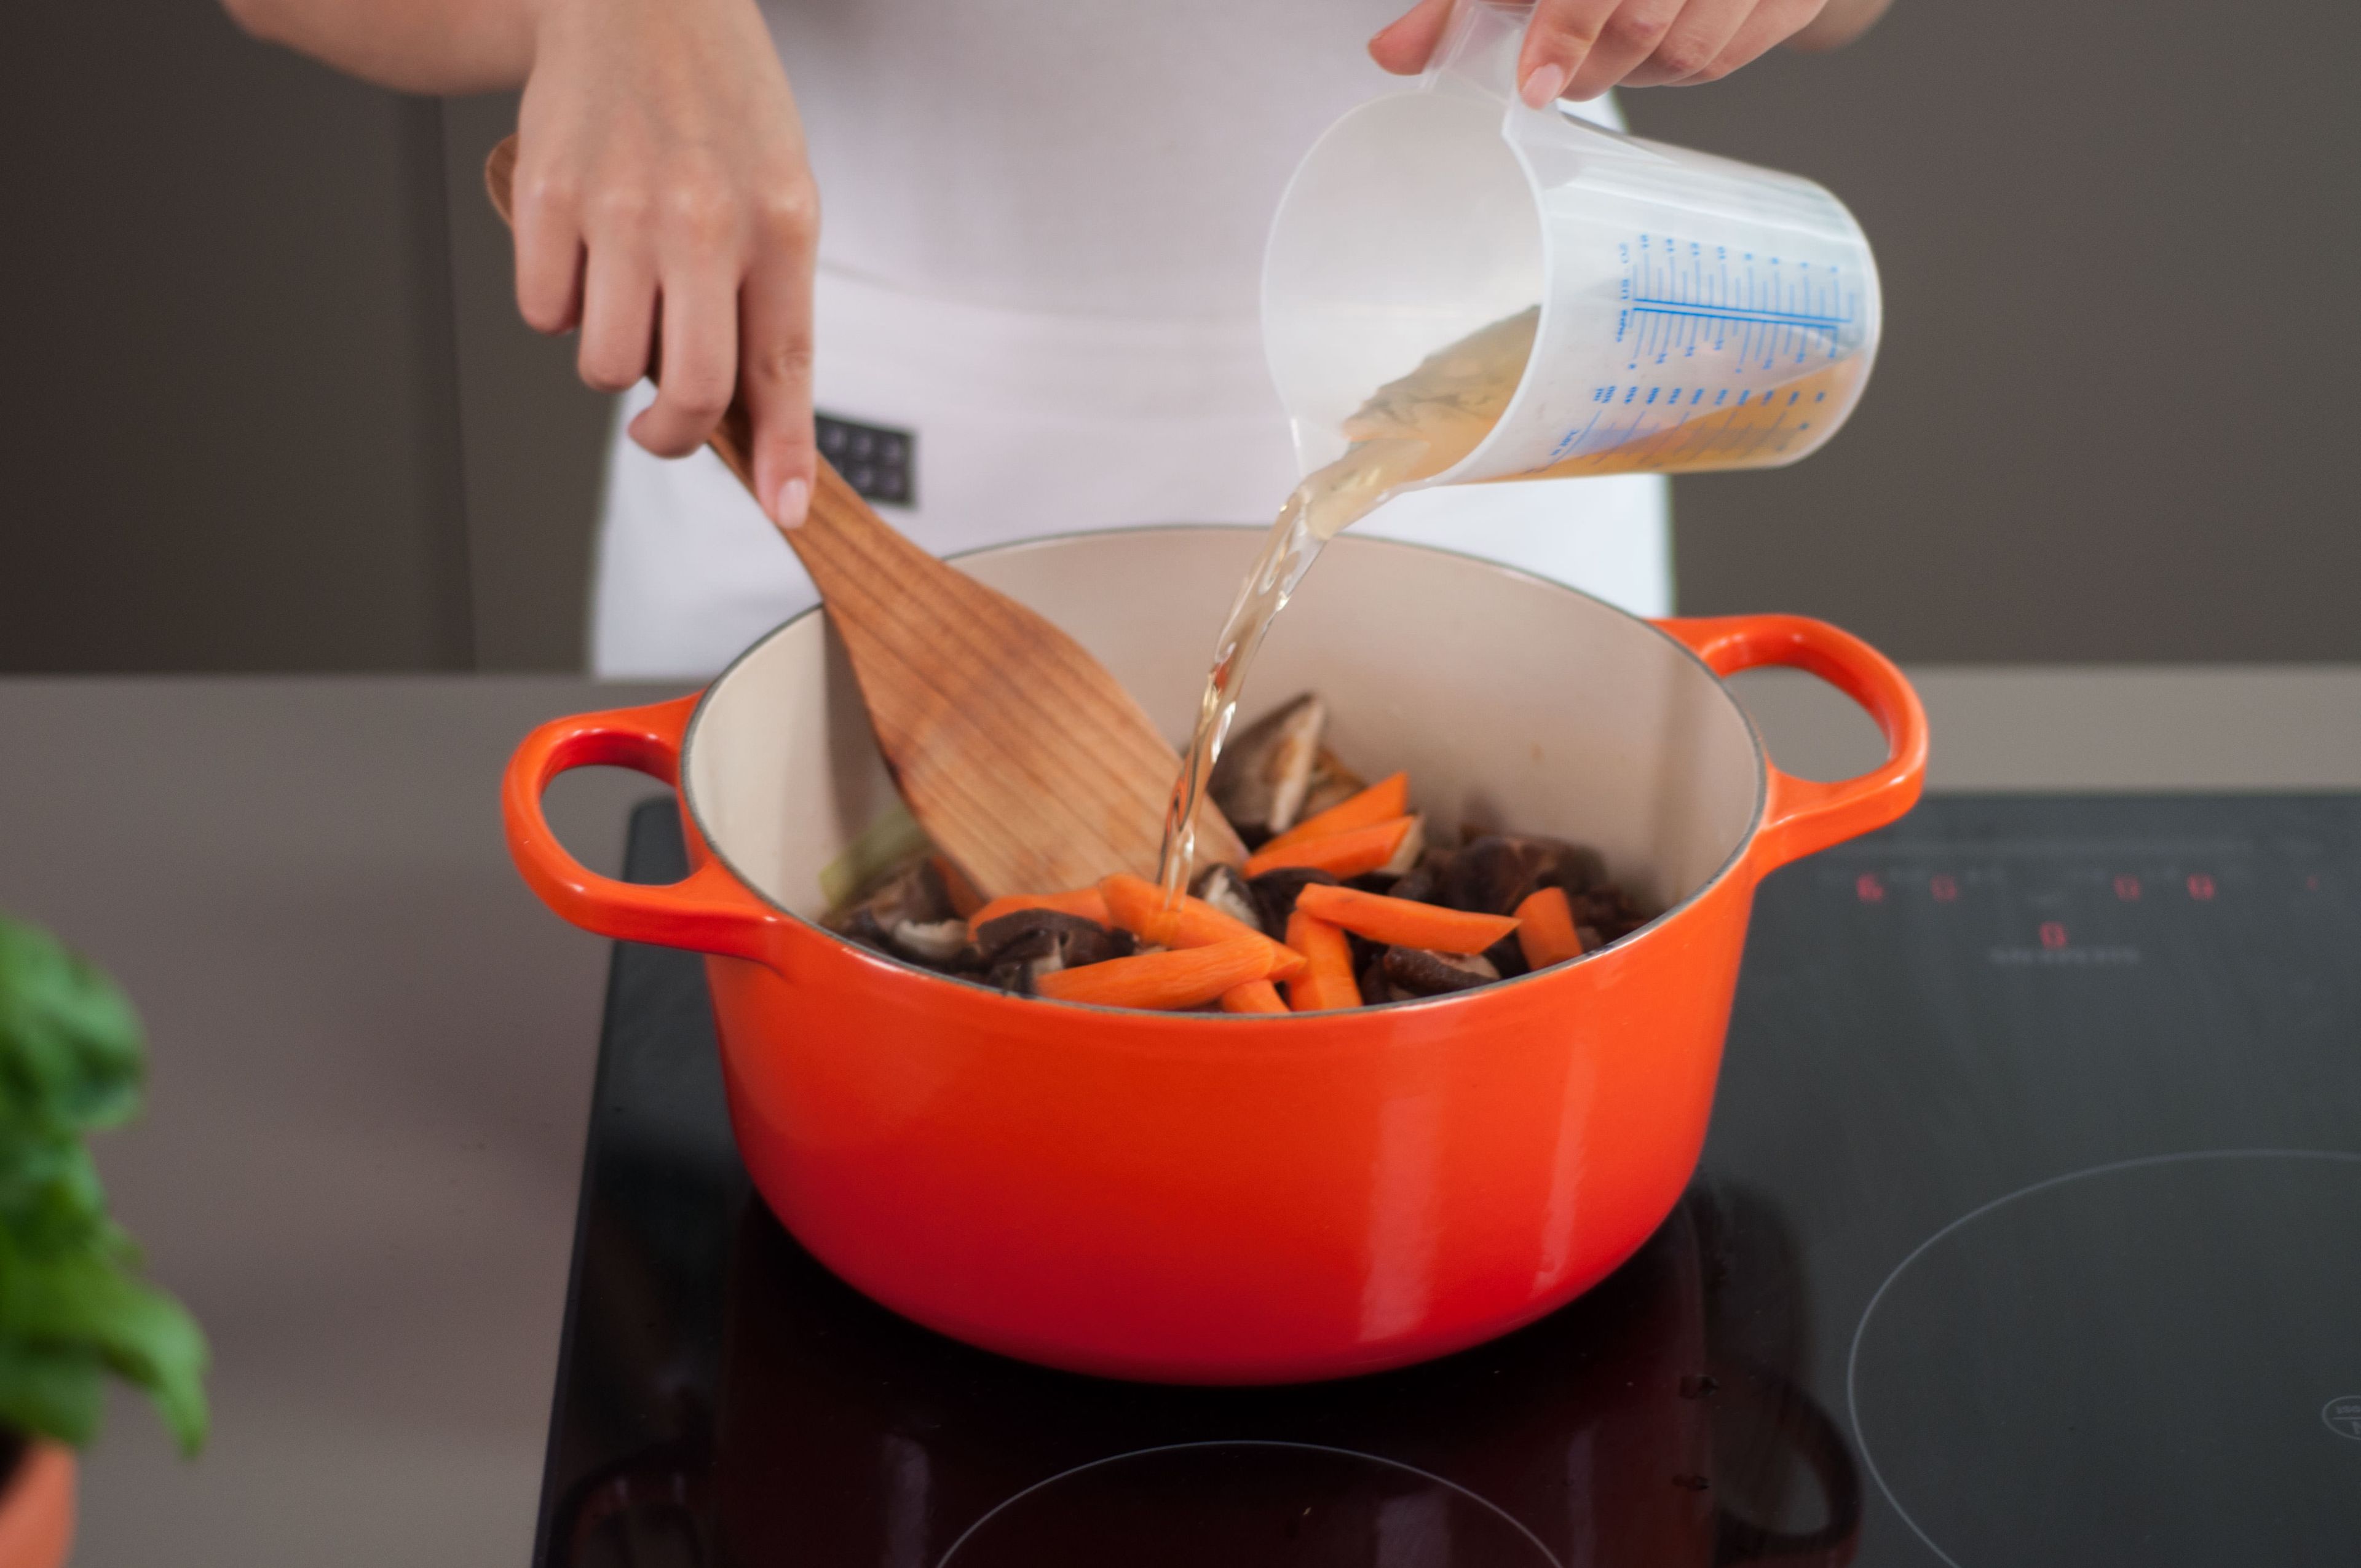 Shiitake-Pilze, Karotten, Maronen und das aufgefangene Pilz-Wasser hinzugeben. Hitze reduzieren und mit einem Deckel abdecken. Für ca. 25 – 30 Min. köcheln lassen und gelegentlich umrühren, bis das Hühnchen durch und die Karotten zart sind. Guten Appetit!